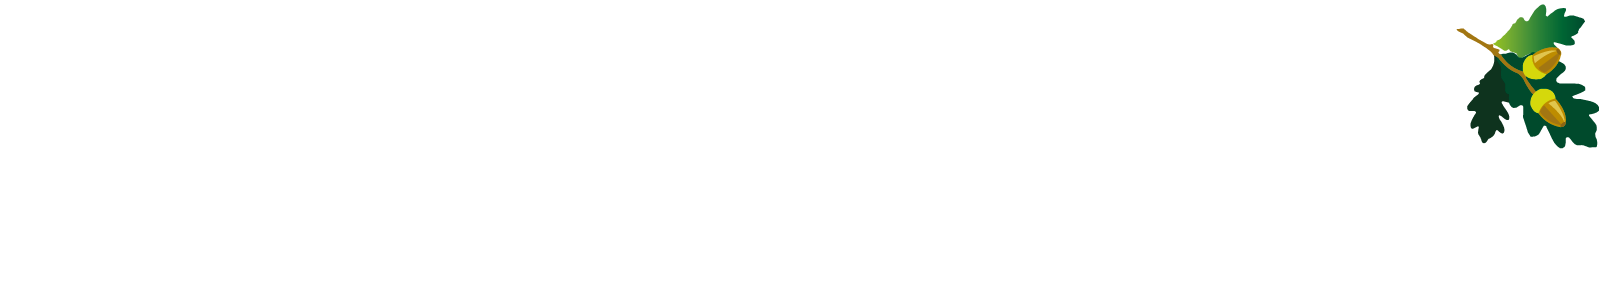 Sherwood-Group-logo-wt